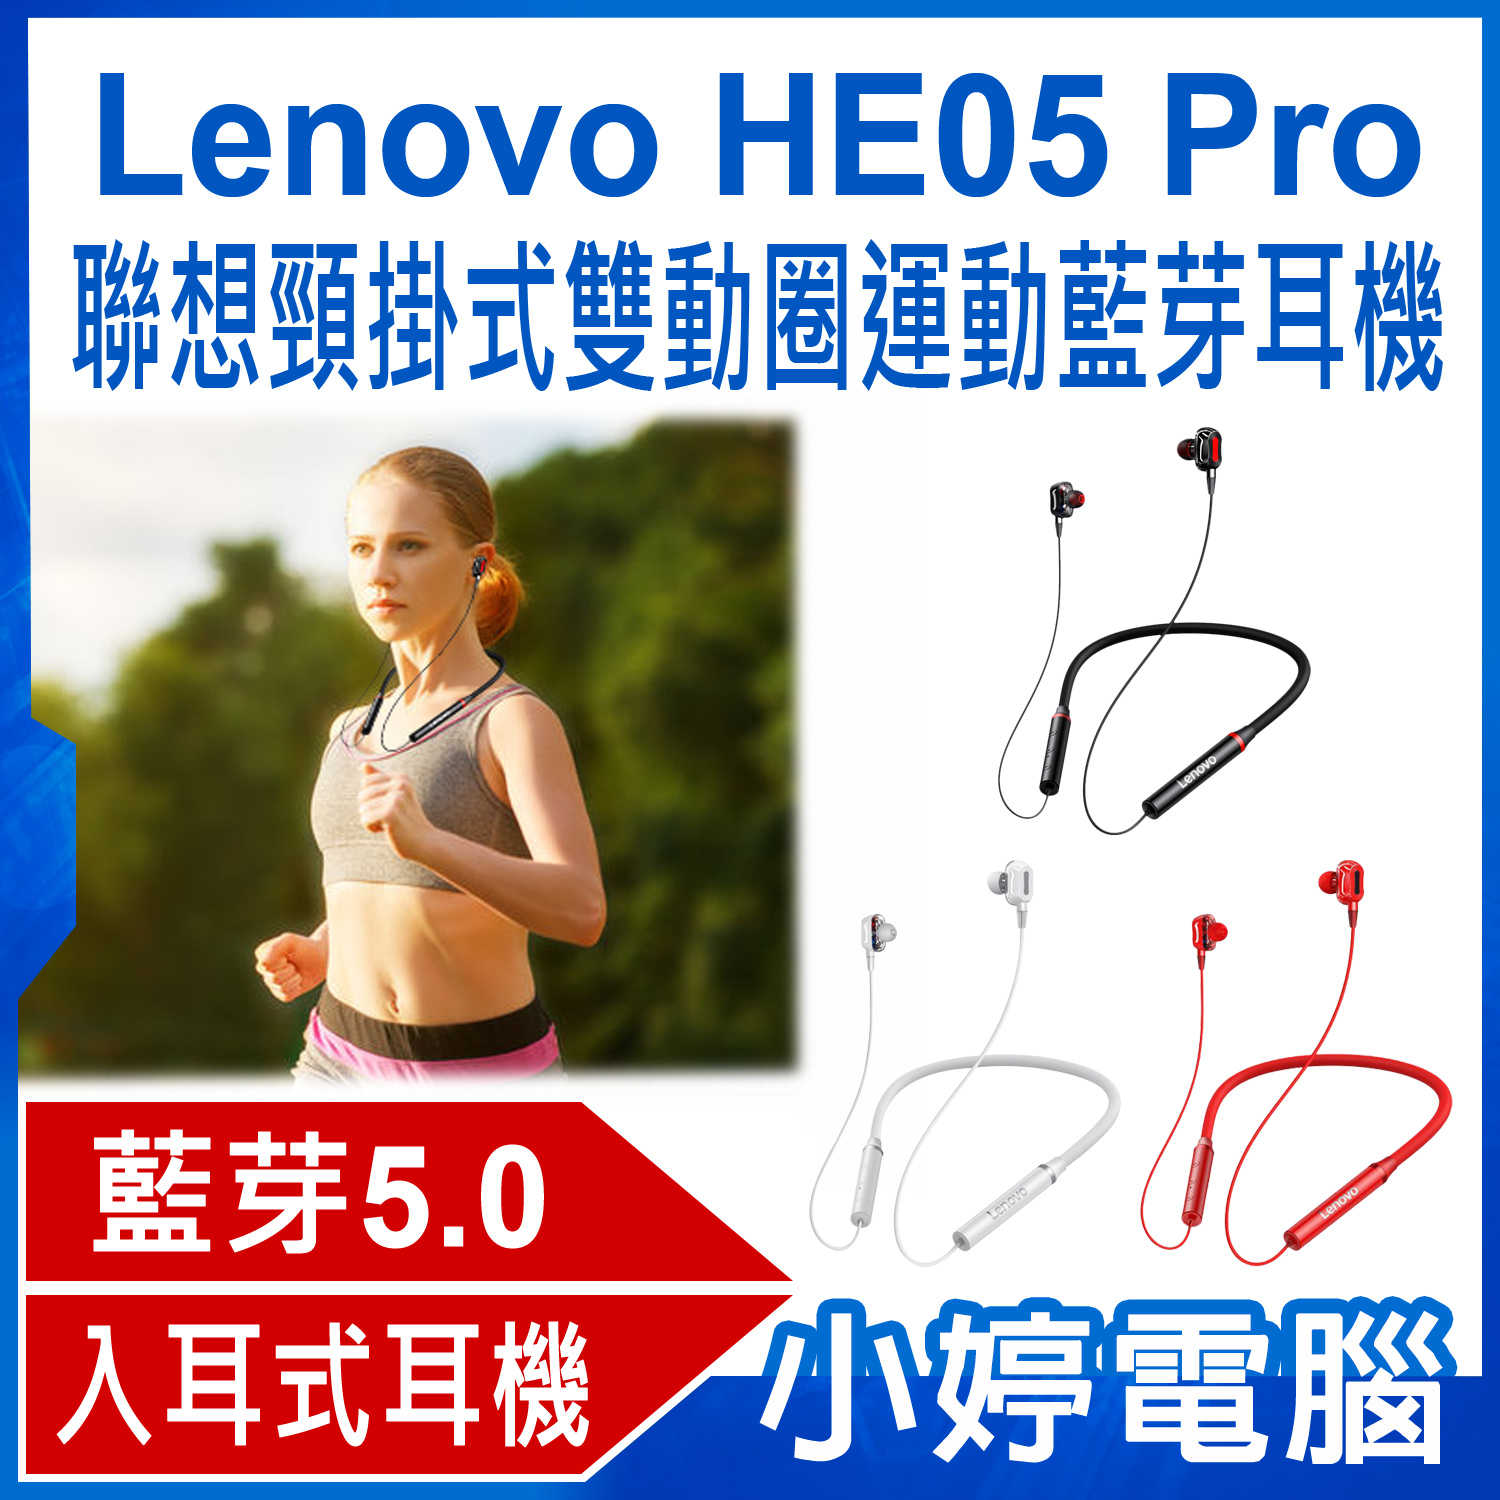 【小婷電腦】全新 Lenovo HE05 Pro 聯想頸掛式雙動圈運動藍芽耳機 藍芽5.0 HIFI音質 傳輸達10米